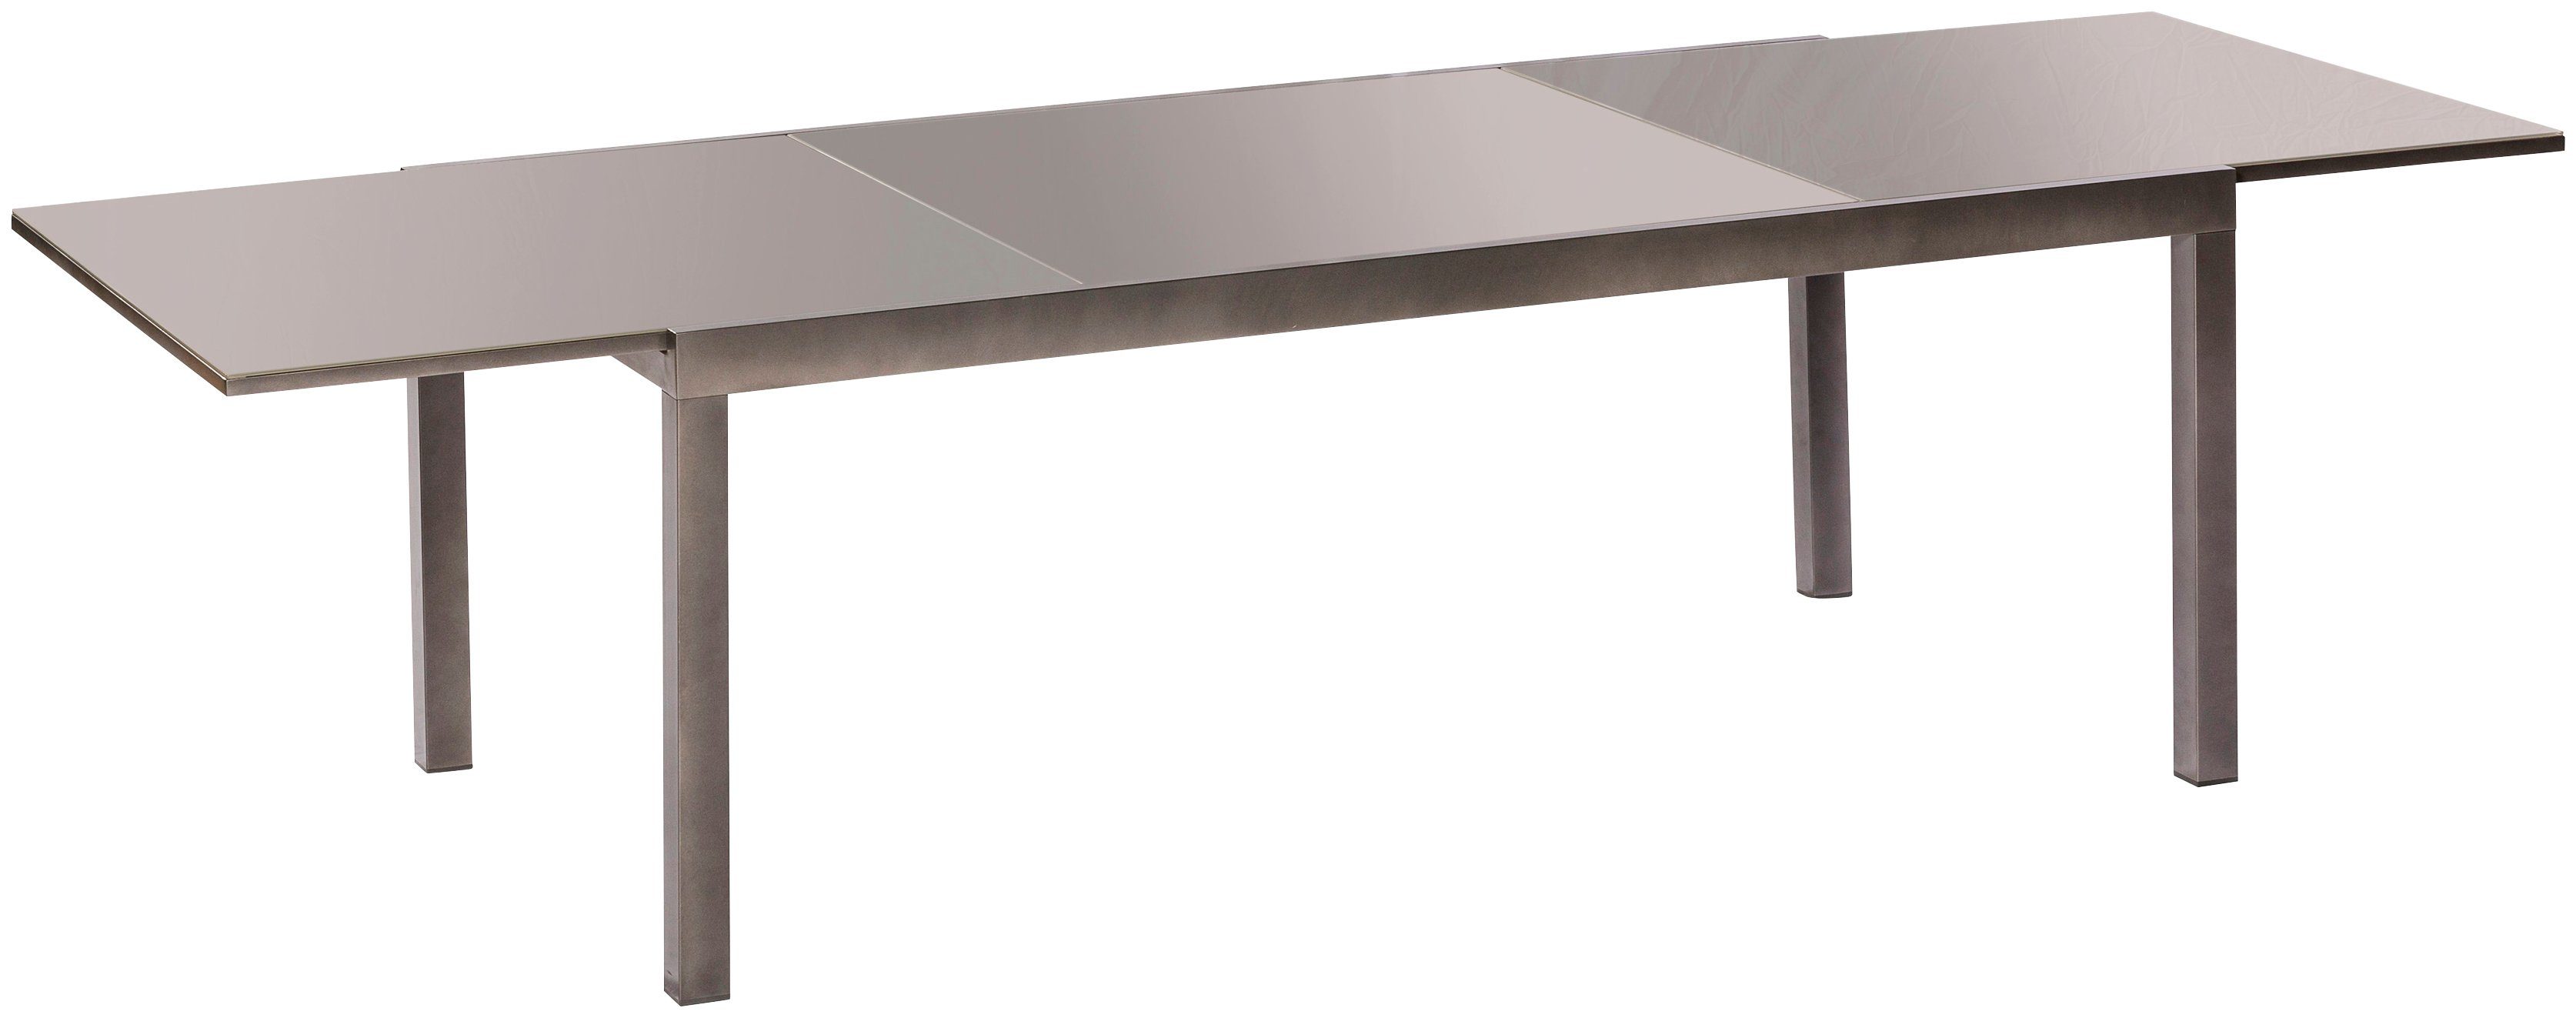 MERXX Gartentisch Semi AZ-Tisch, 110x220 cm